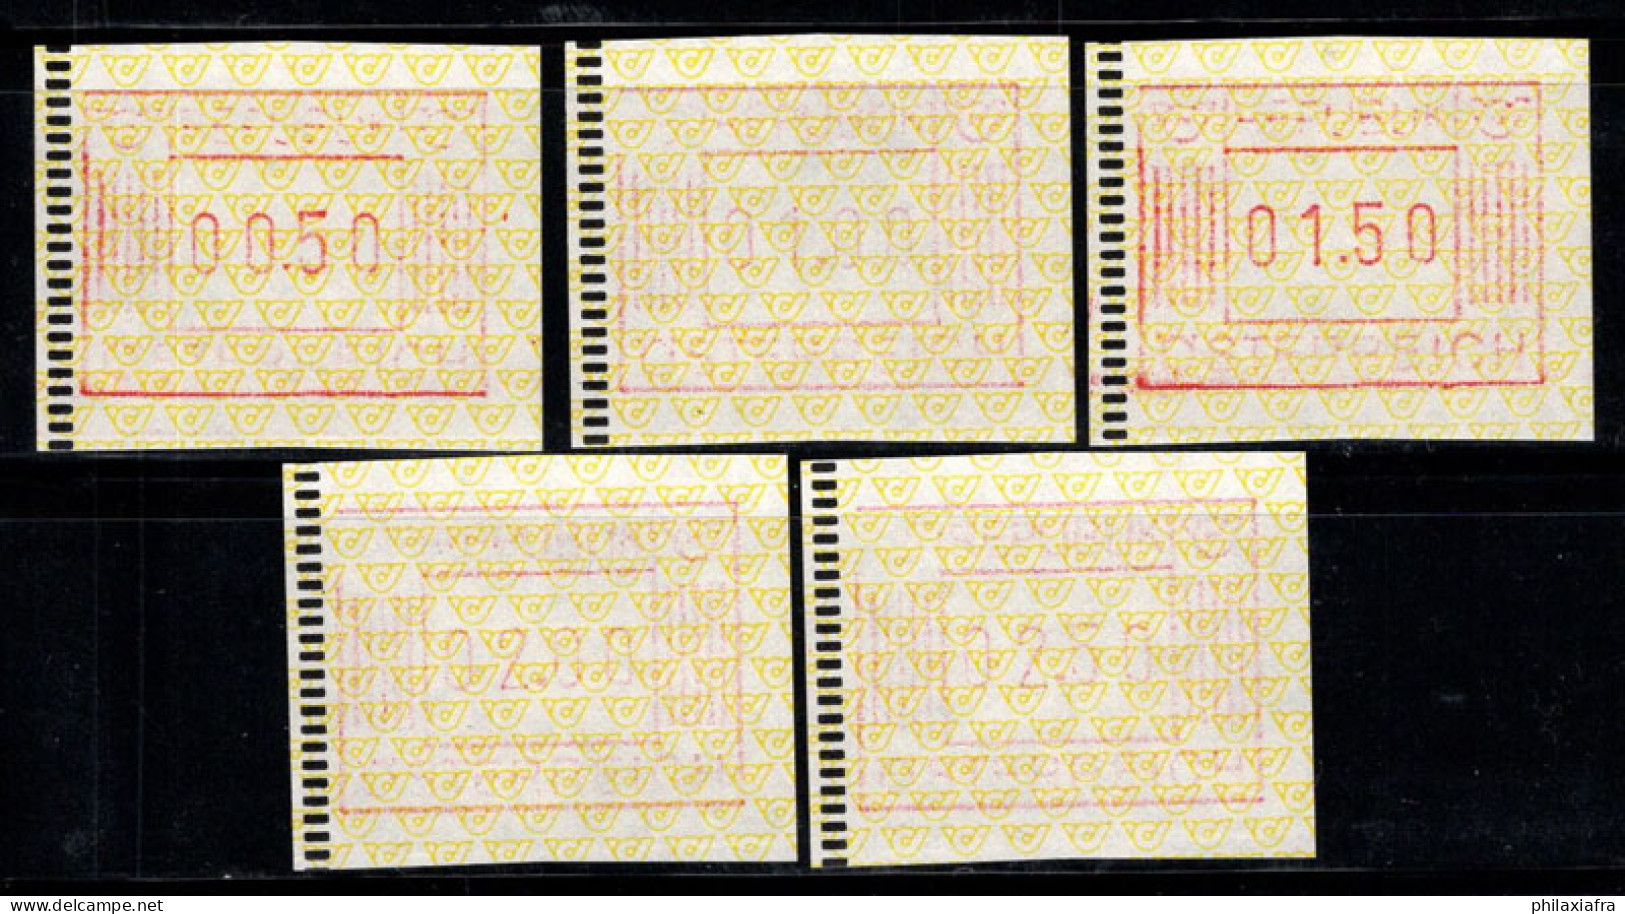 Autriche 1983 Mi. 1 Neuf ** 100% ATM Guichet Automatique, 00.50-02.50 - Macchine Per Obliterare (EMA)